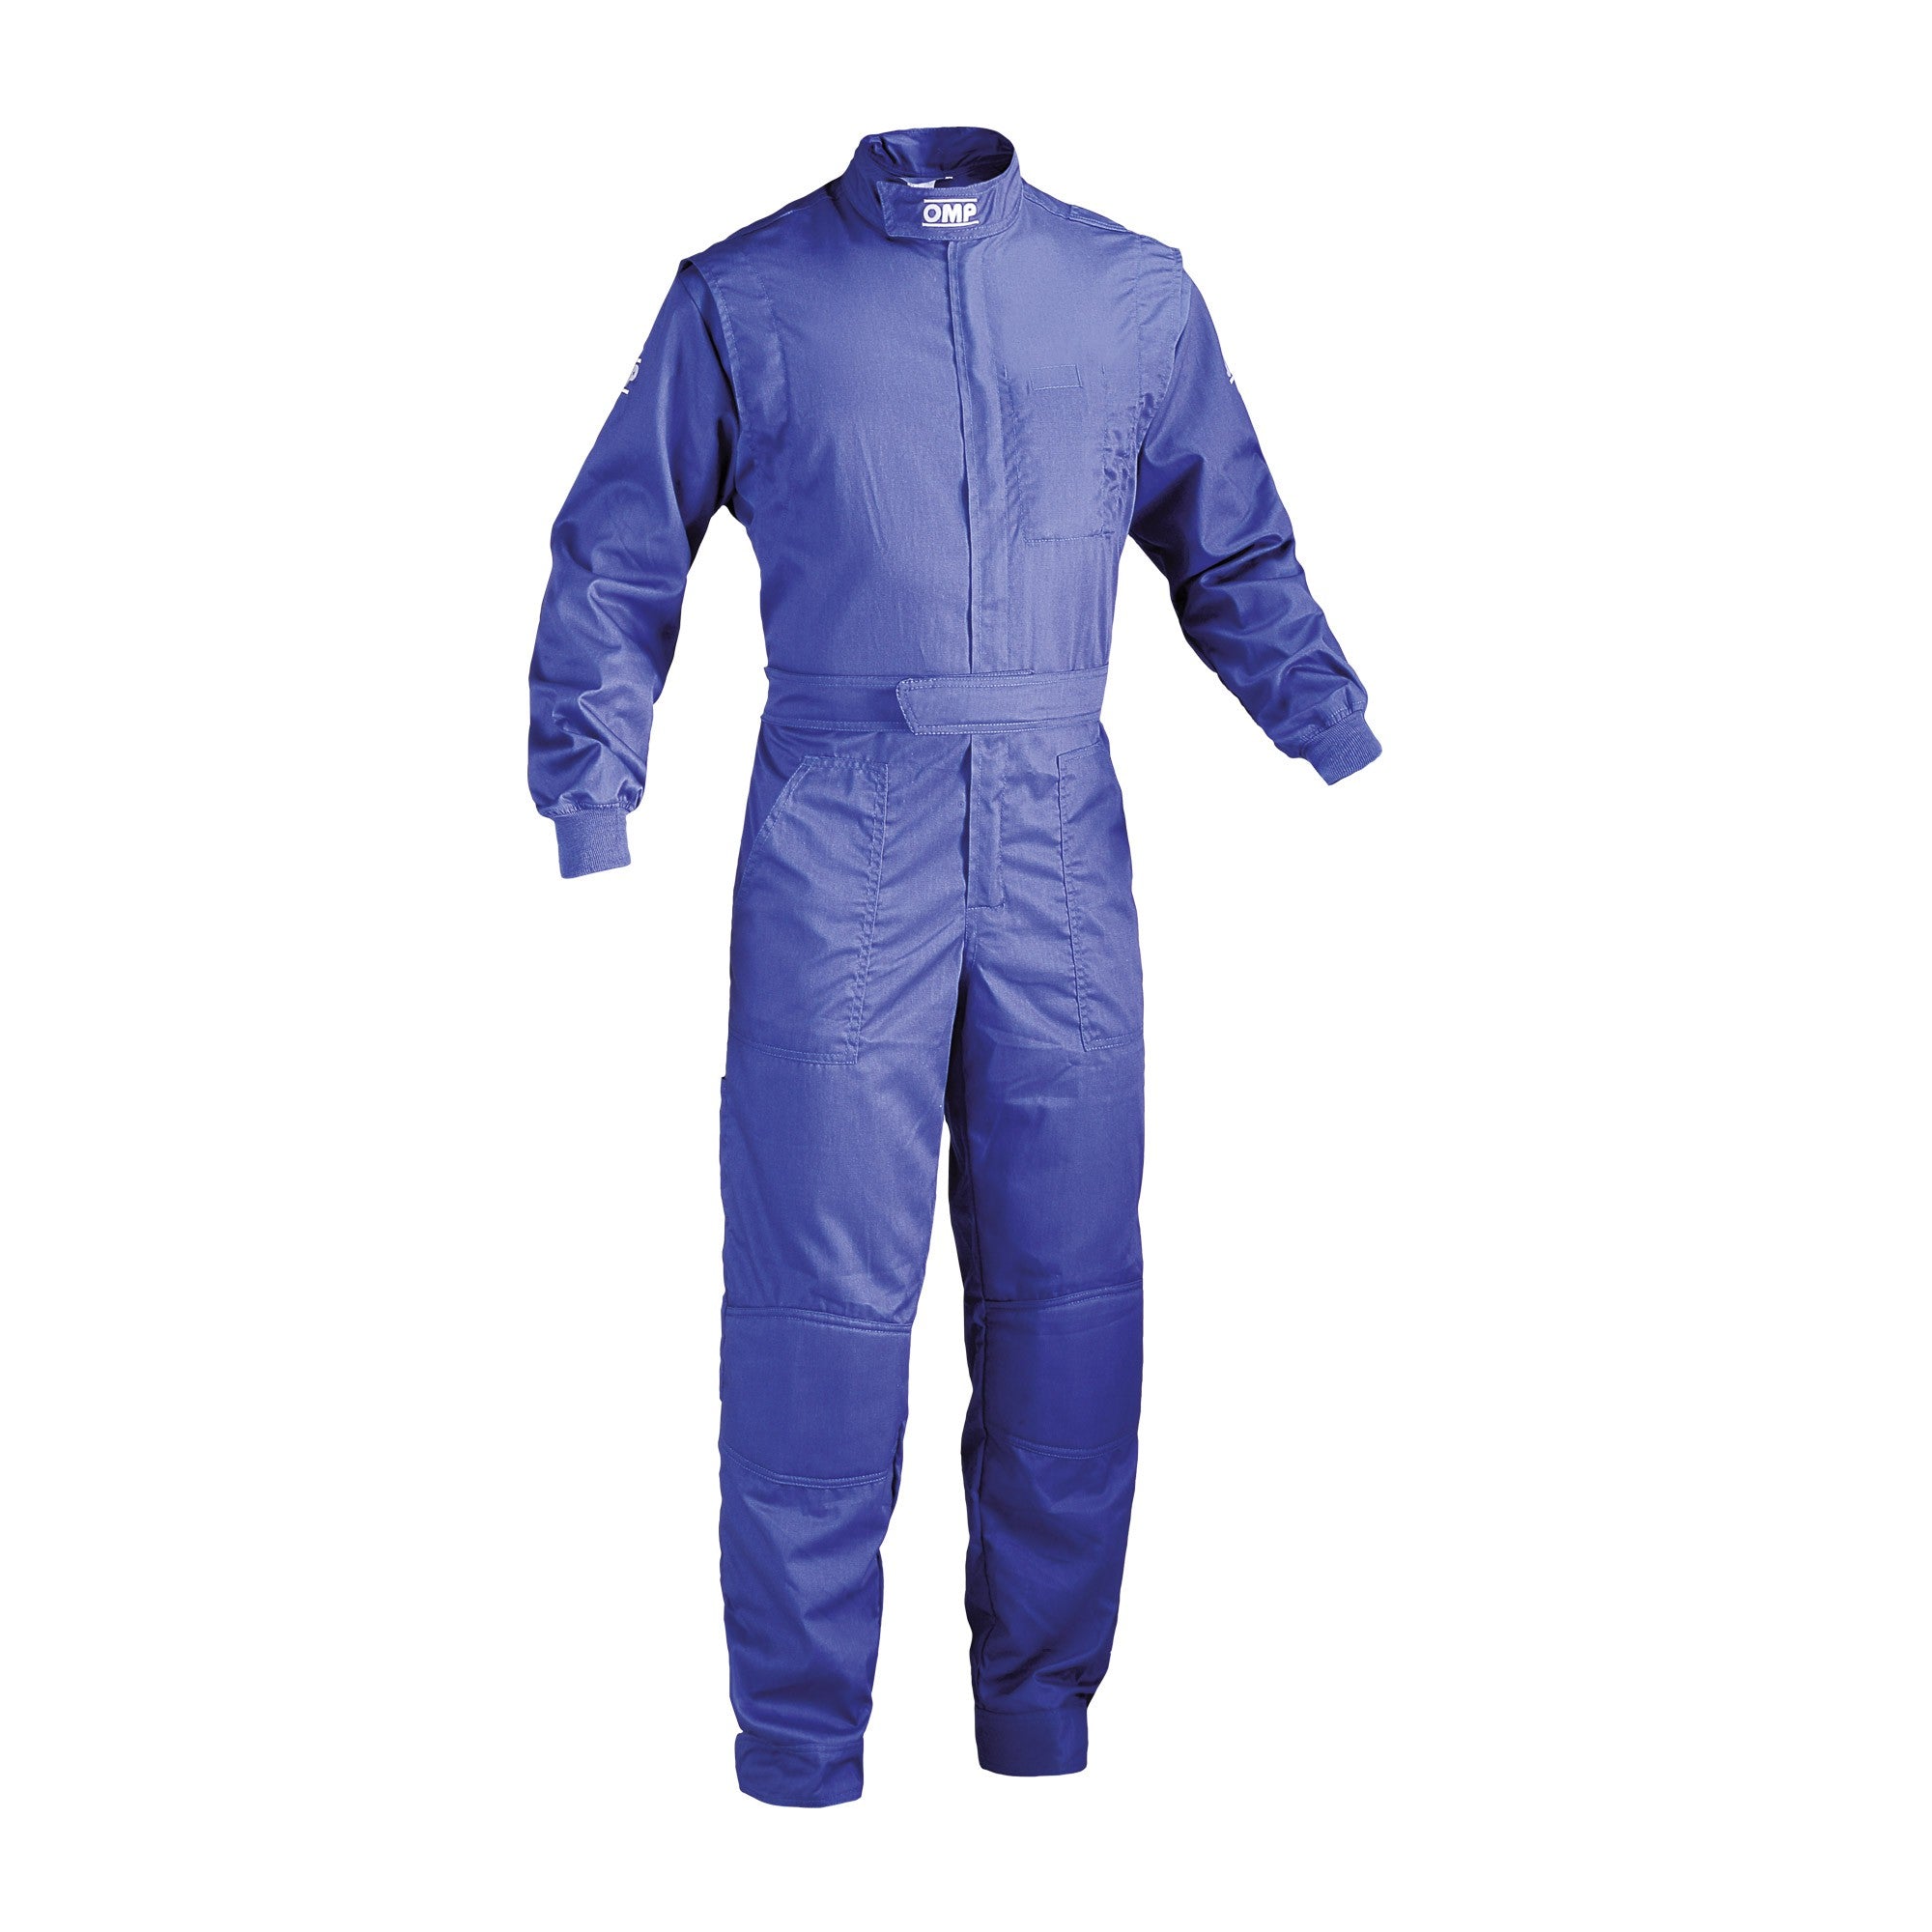 OMP NB0-1579-A01-041-44 (NB157904144) Mechanic suit SUMMER, blue, size 44 Photo-0 